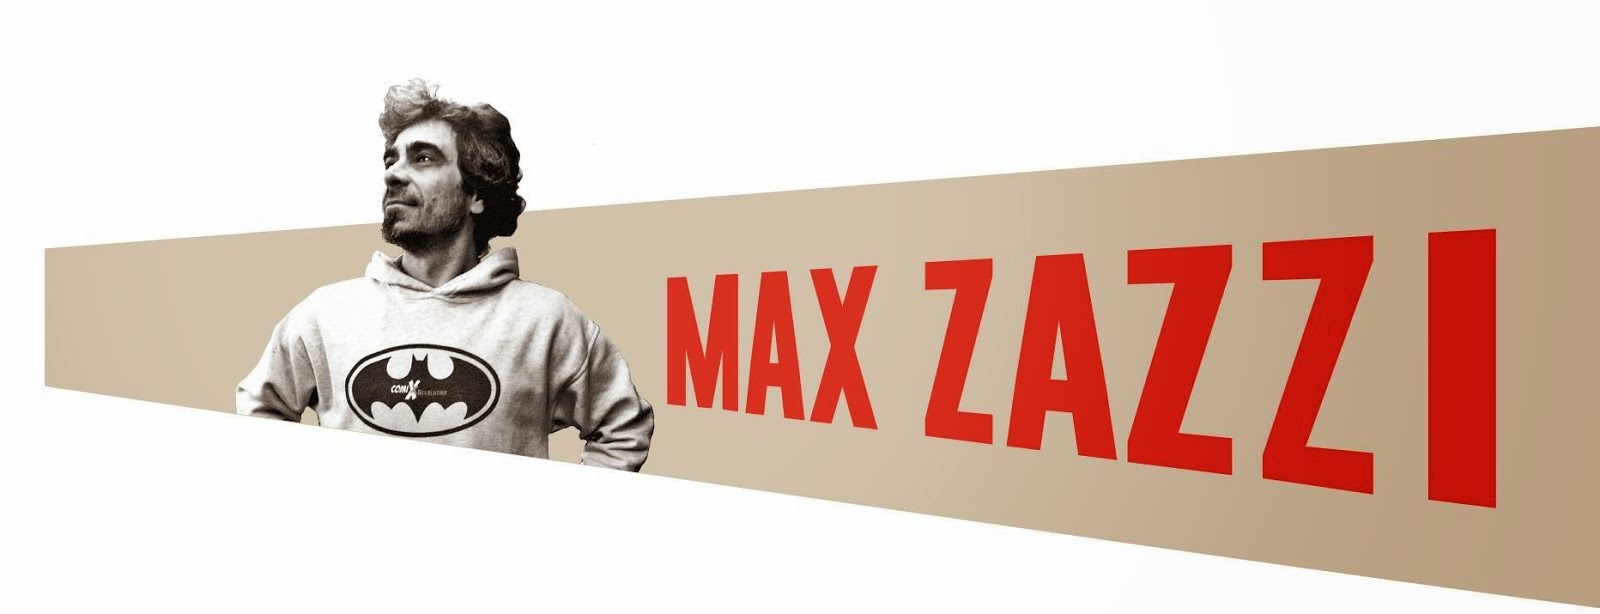 MAX ZAZZI - ComiXrevolution